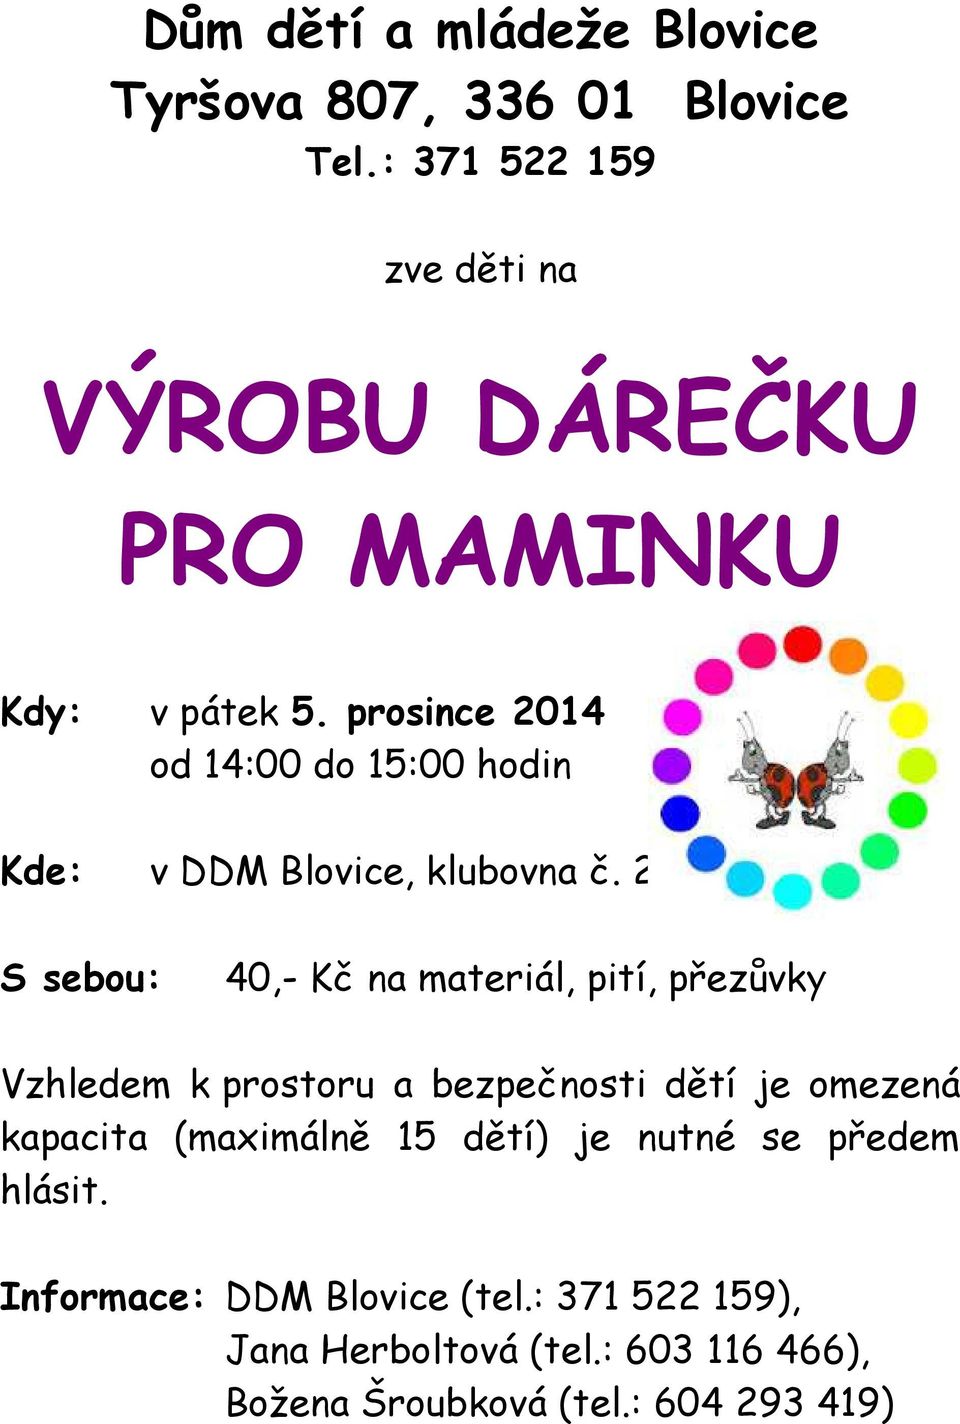 prosince 2014 od 14:00 do 15:00 hodin Kde: v DDM Blovice, klubovna č.